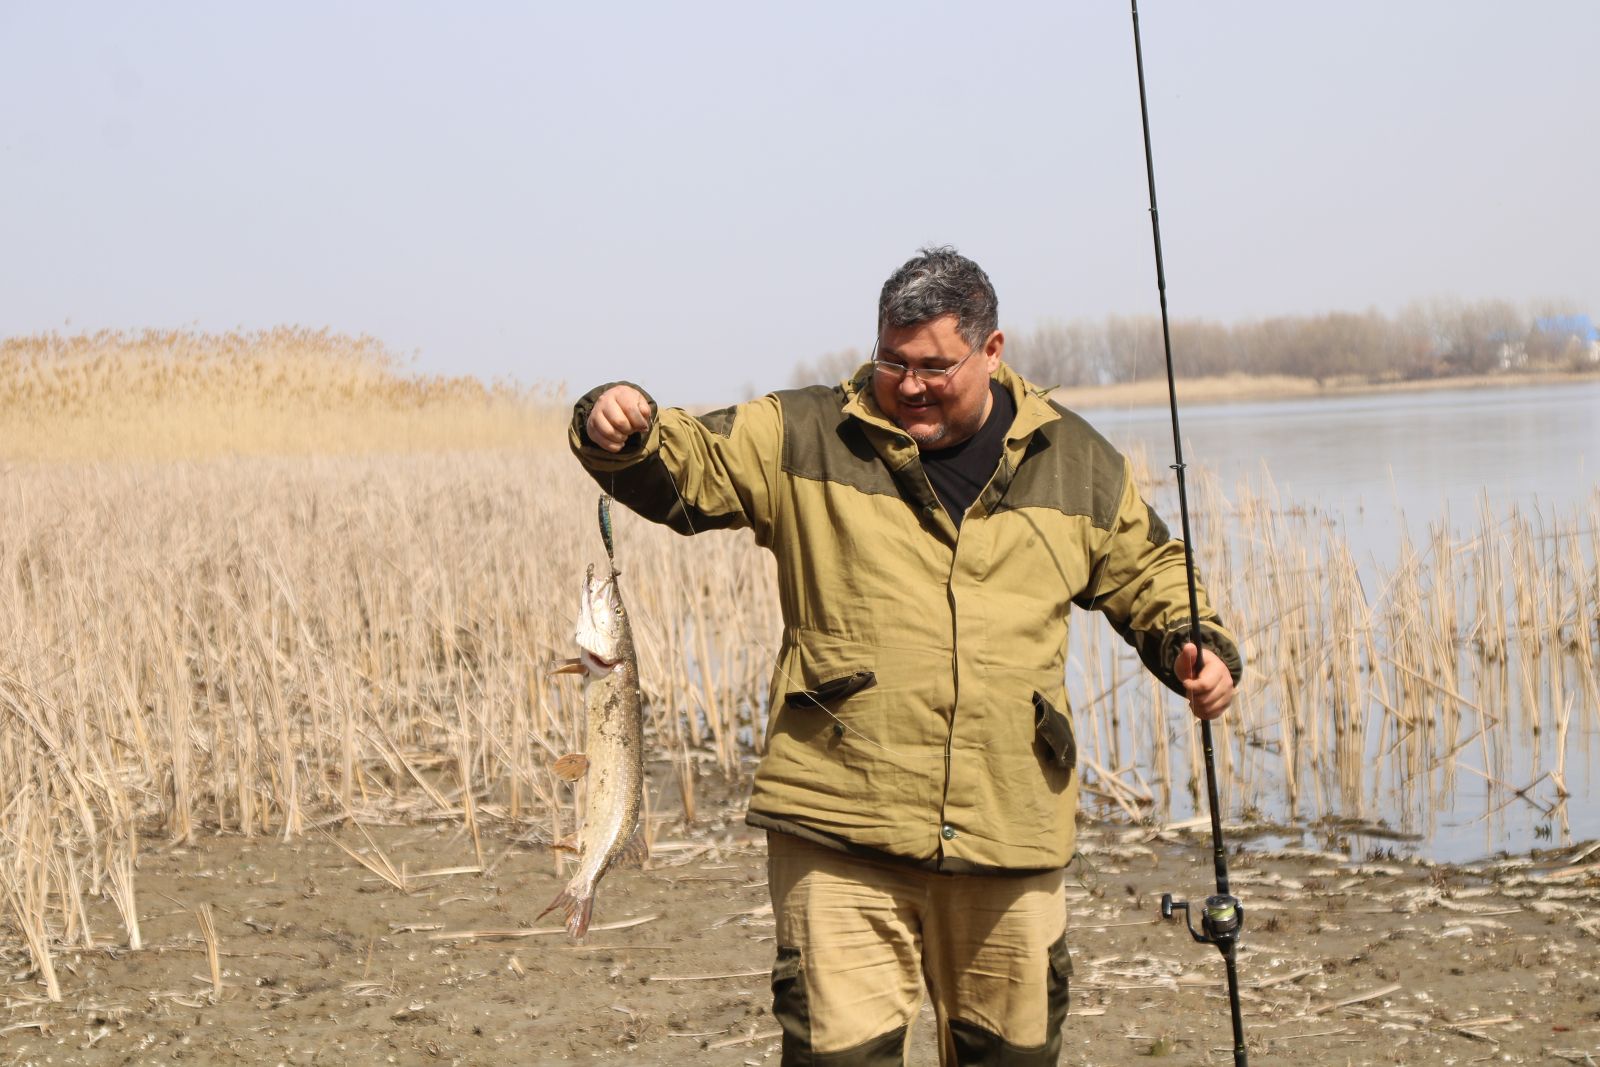 Правила любительского рыболовства в астраханской области